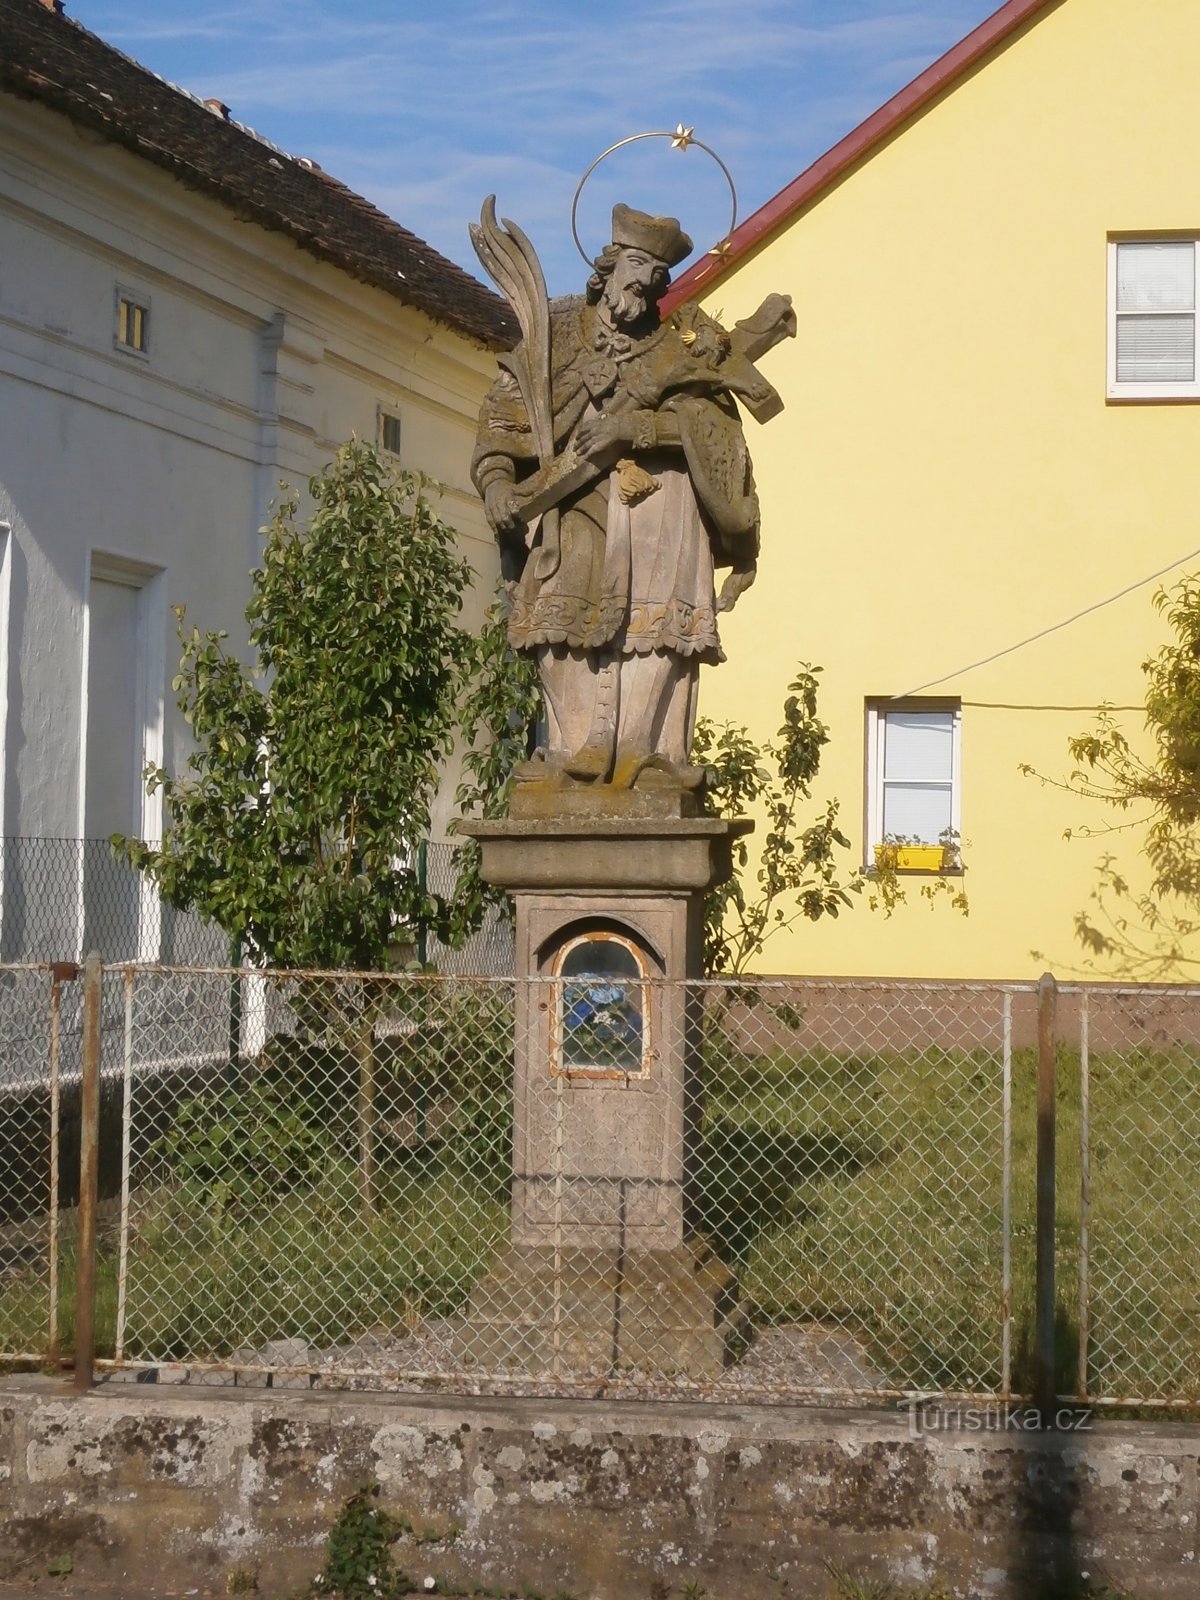 Staty av St. Johannes av Nepomuck, som tidigare åtföljdes av den ursprungliga klockstapeln (Černožice